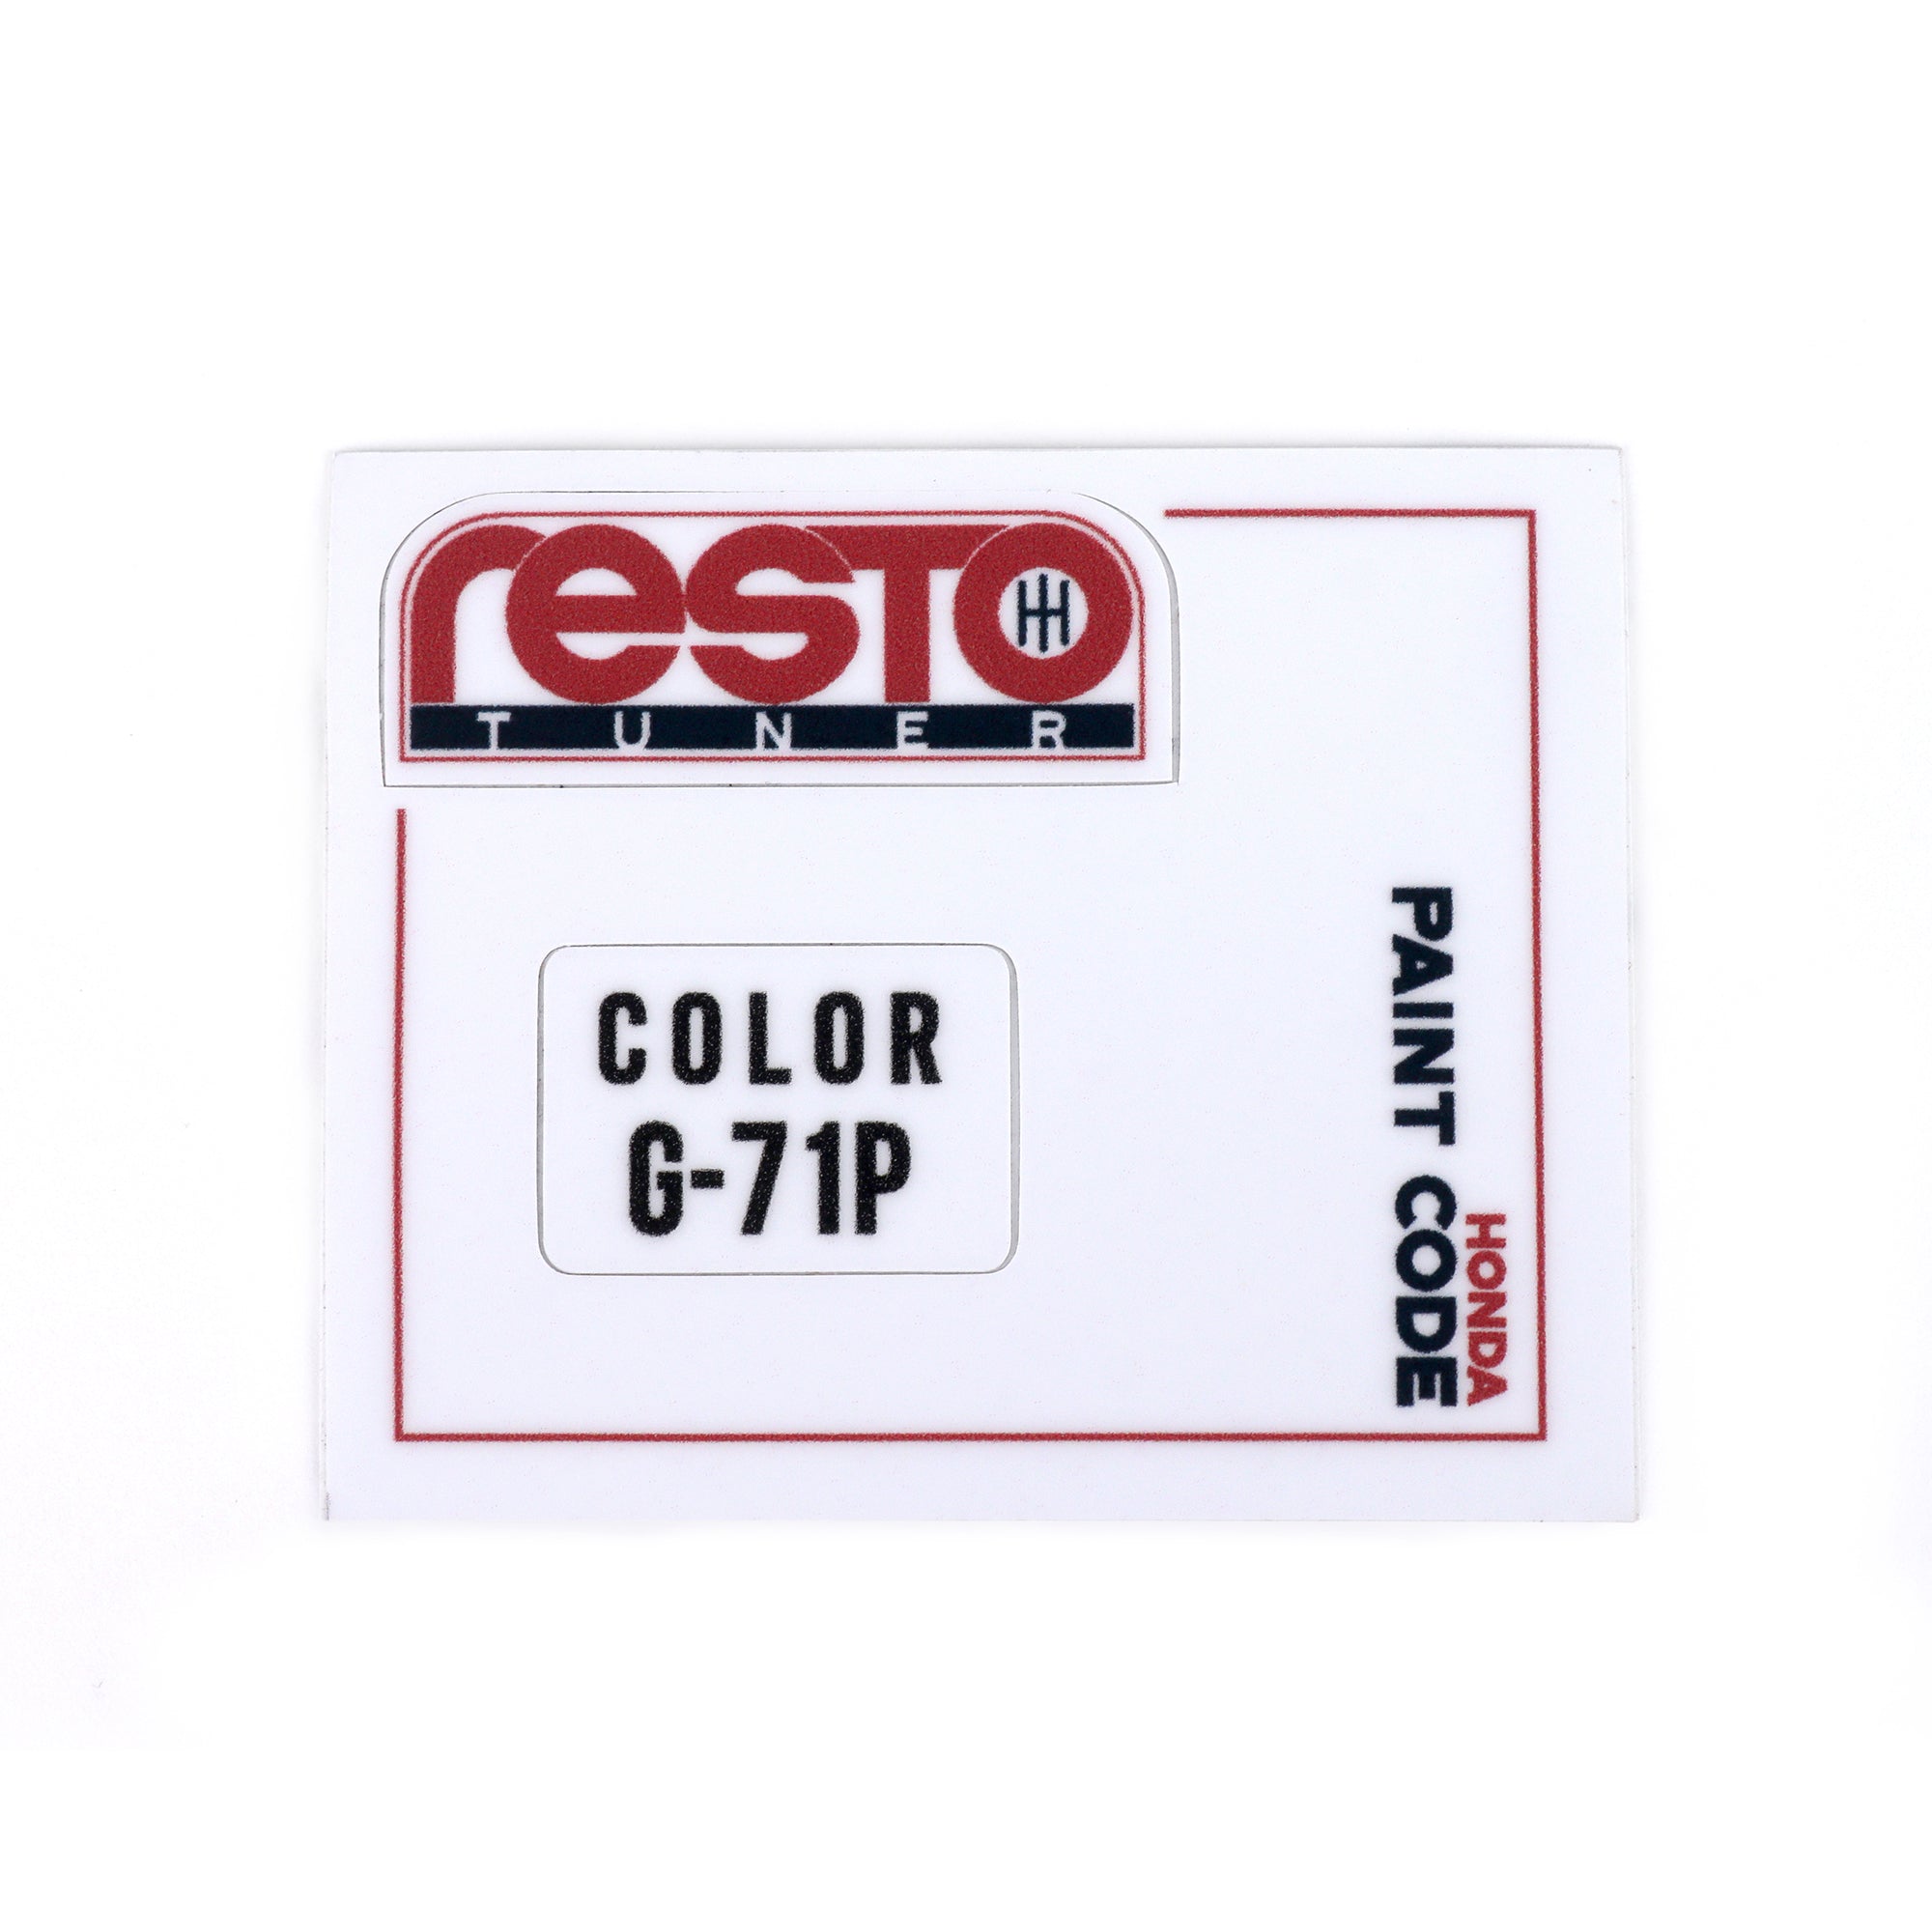 RestoTuner Honda Paint Code Replacement Decals